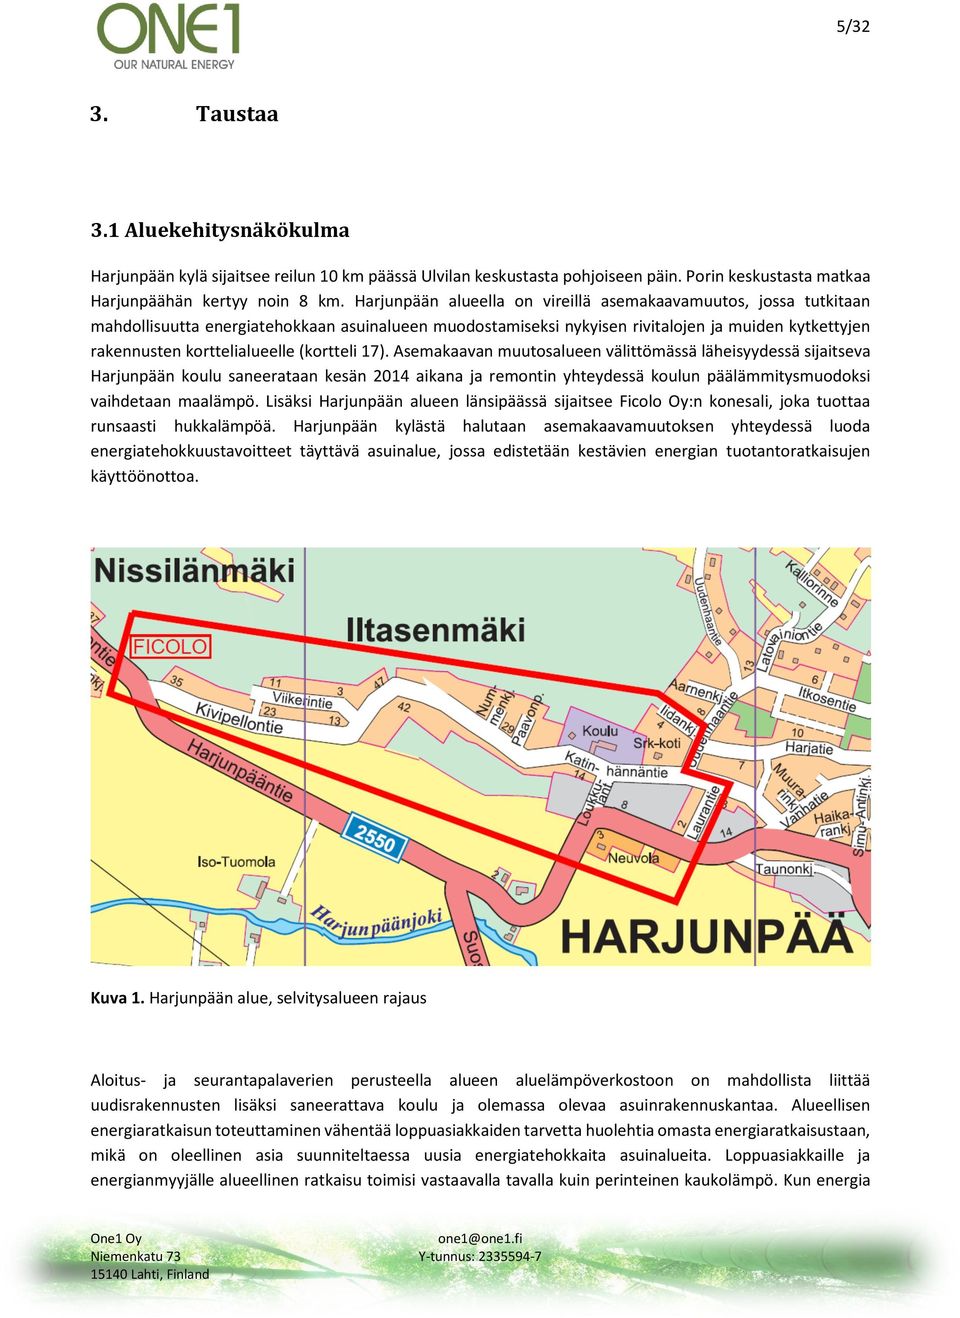 (kortteli 17). Asemakaavan muutosalueen välittömässä läheisyydessä sijaitseva Harjunpään koulu saneerataan kesän 2014 aikana ja remontin yhteydessä koulun päälämmitysmuodoksi vaihdetaan maalämpö.